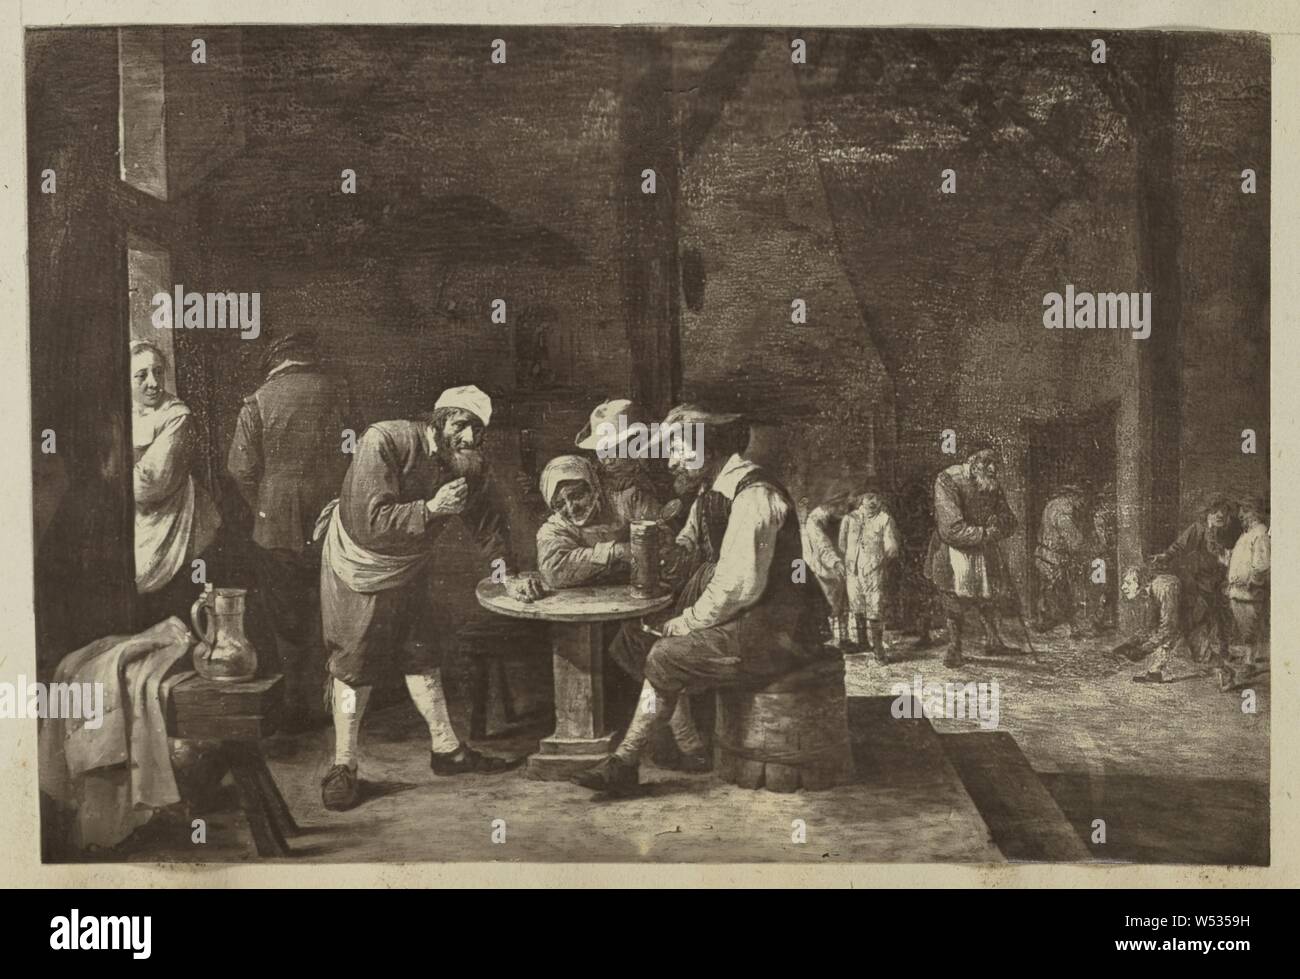 Gemälde von Männern am Tisch versammelt, unbekannte Teekocher, Europa, 1870s Carbon drucken, 10,3 × 15 cm (4 1/16 x 5 7/8 in Stockfoto